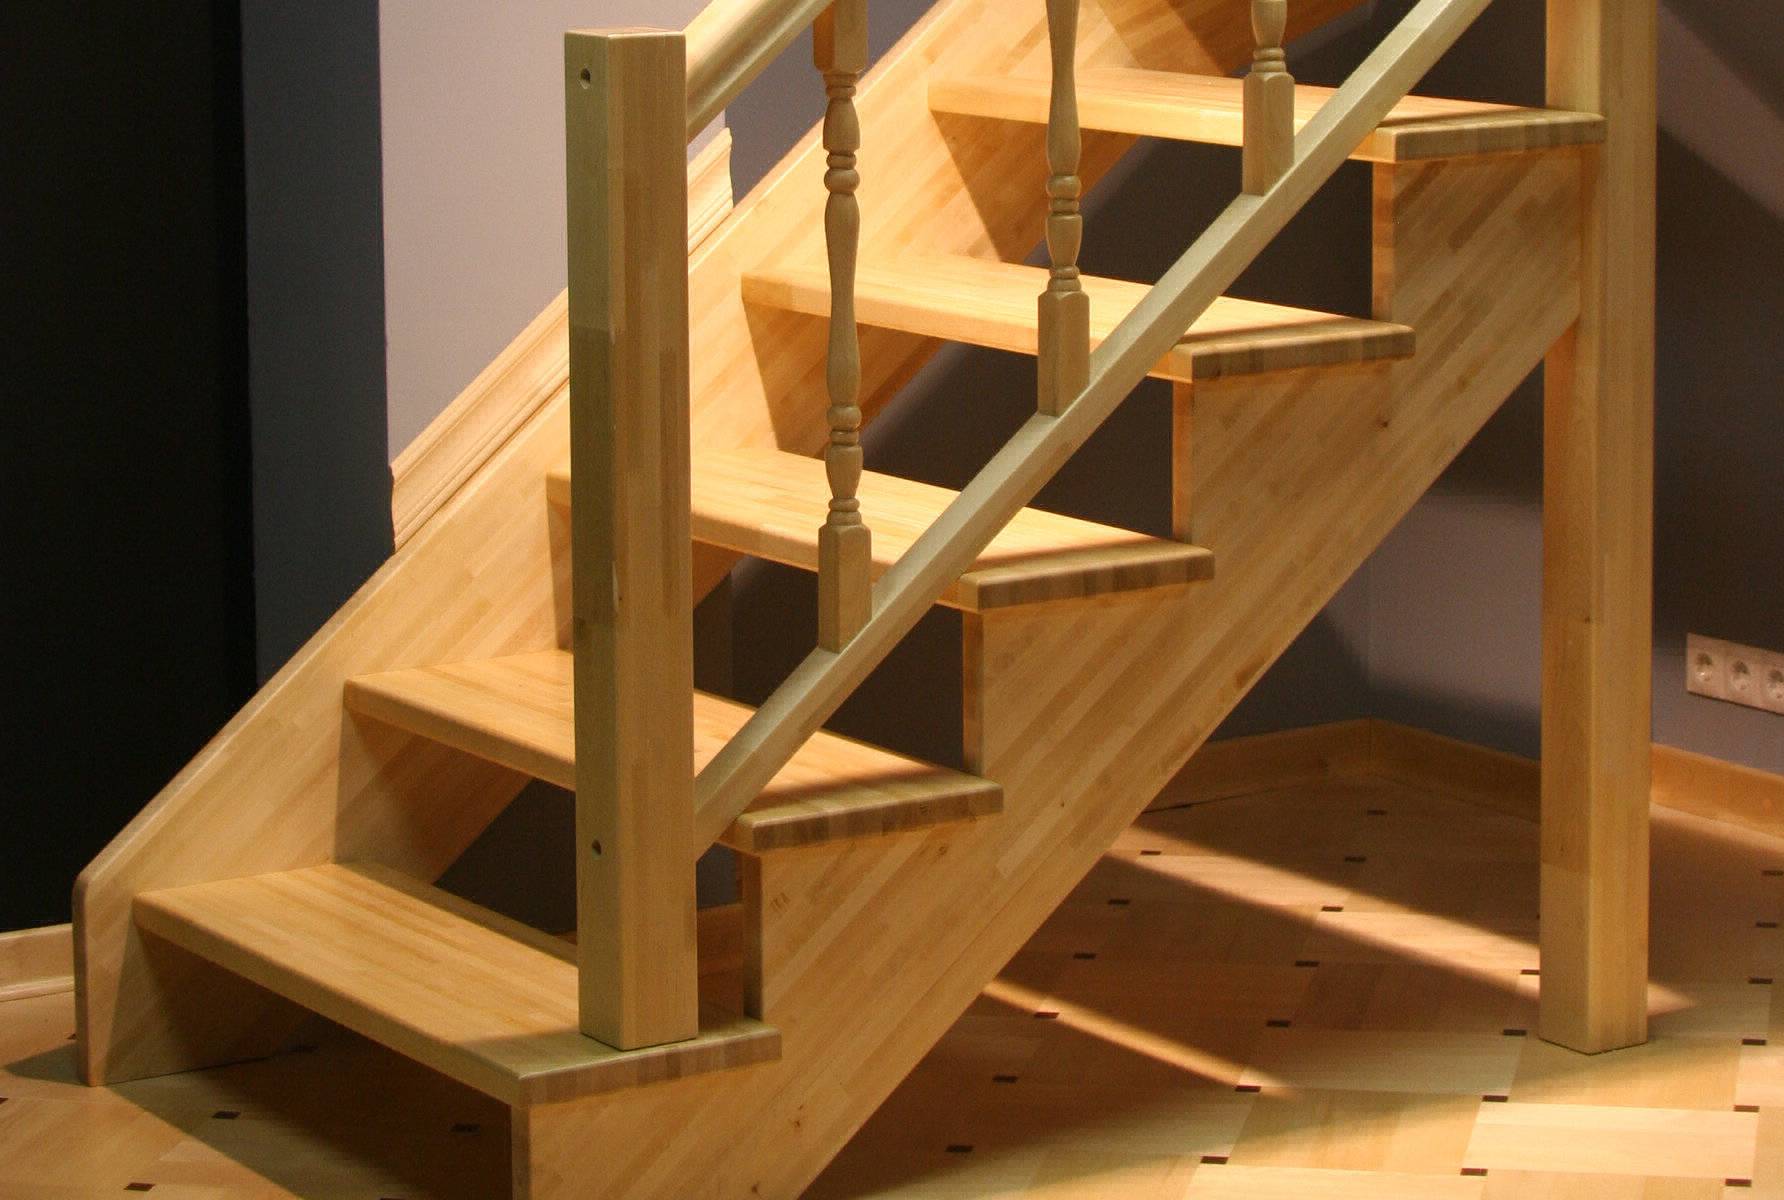 Сборка деревянной лестницы на тетивах своими руками — обзор вариантов и характеристик, технология монтажа